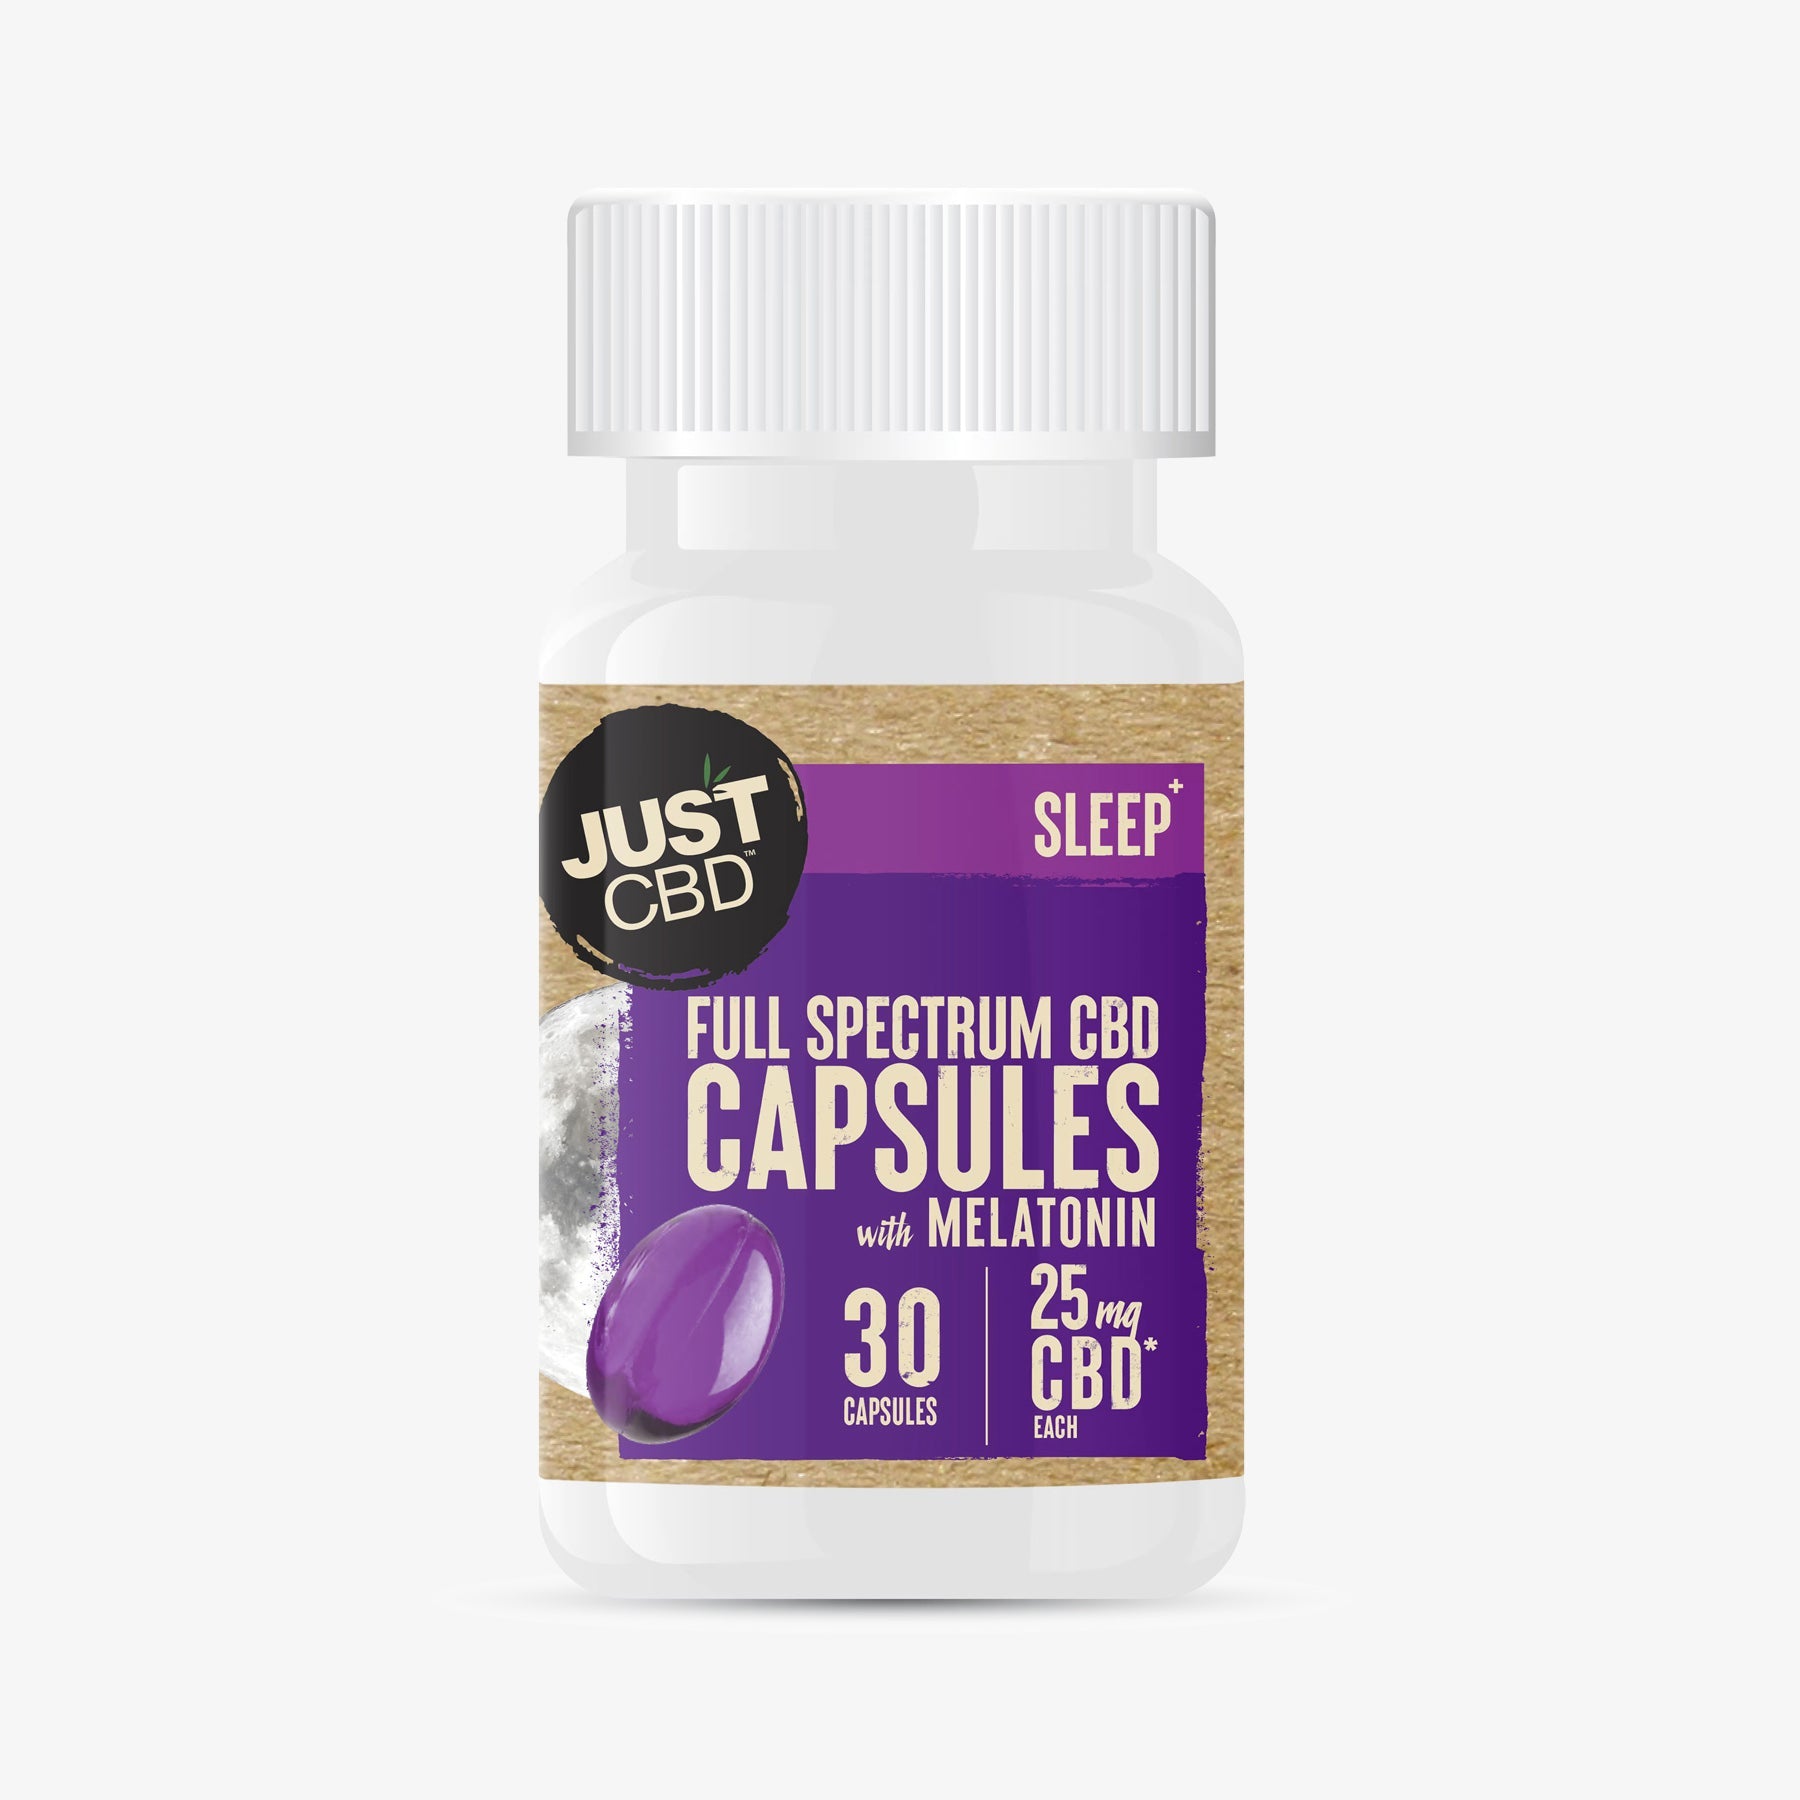 just cbd full spectrum capsules sleep